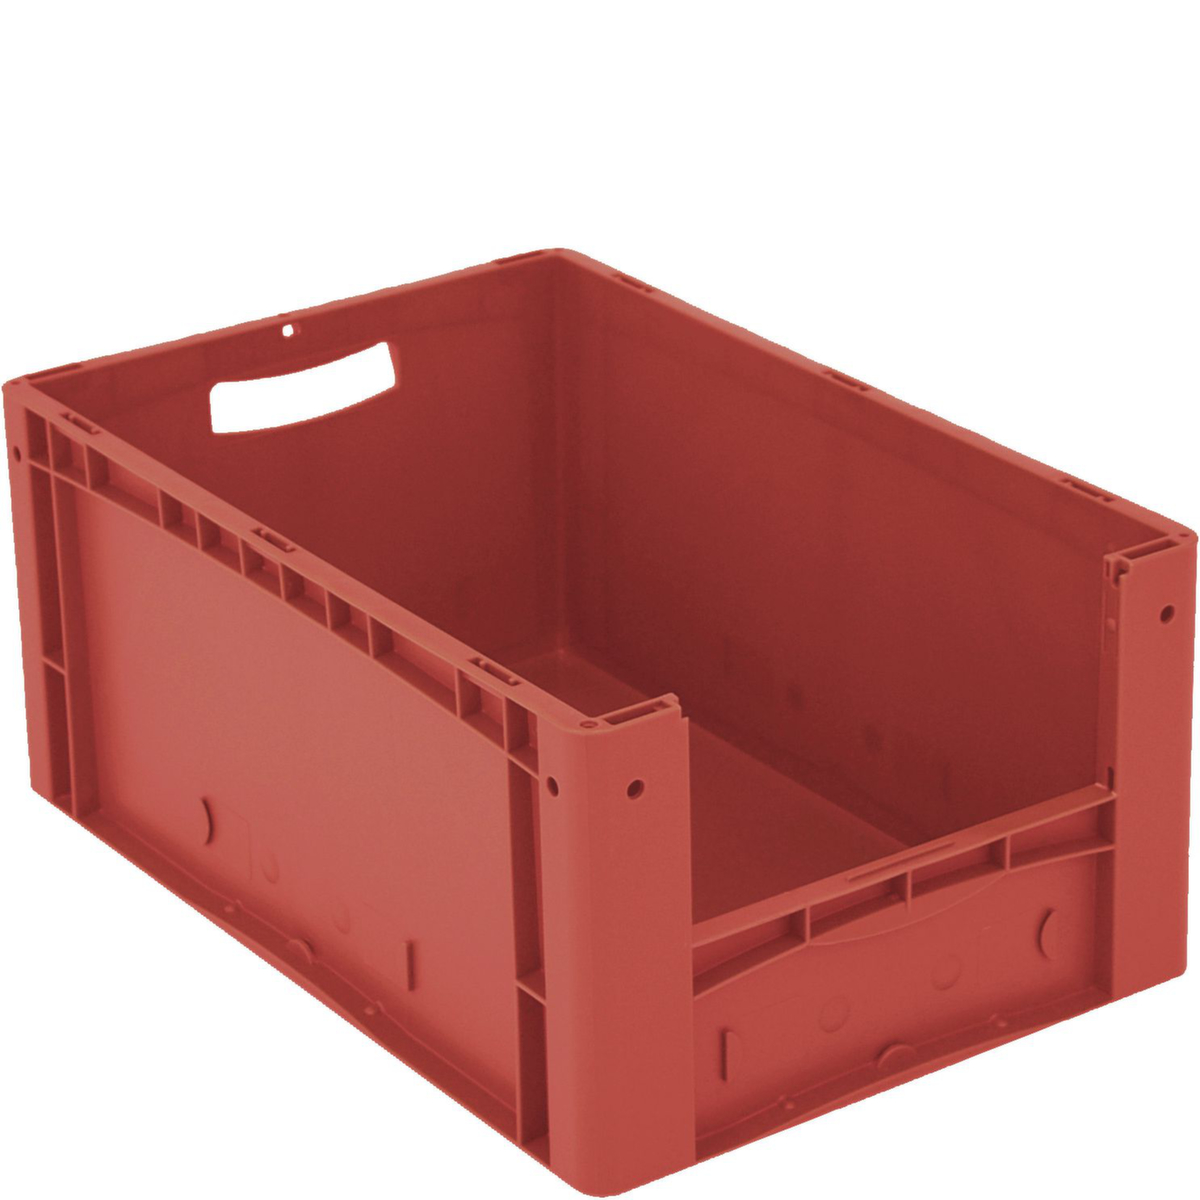 Euronorm zichtbare opslagcontainer met toegangsopening, rood, HxLxB 270x600x400 mm  ZOOM